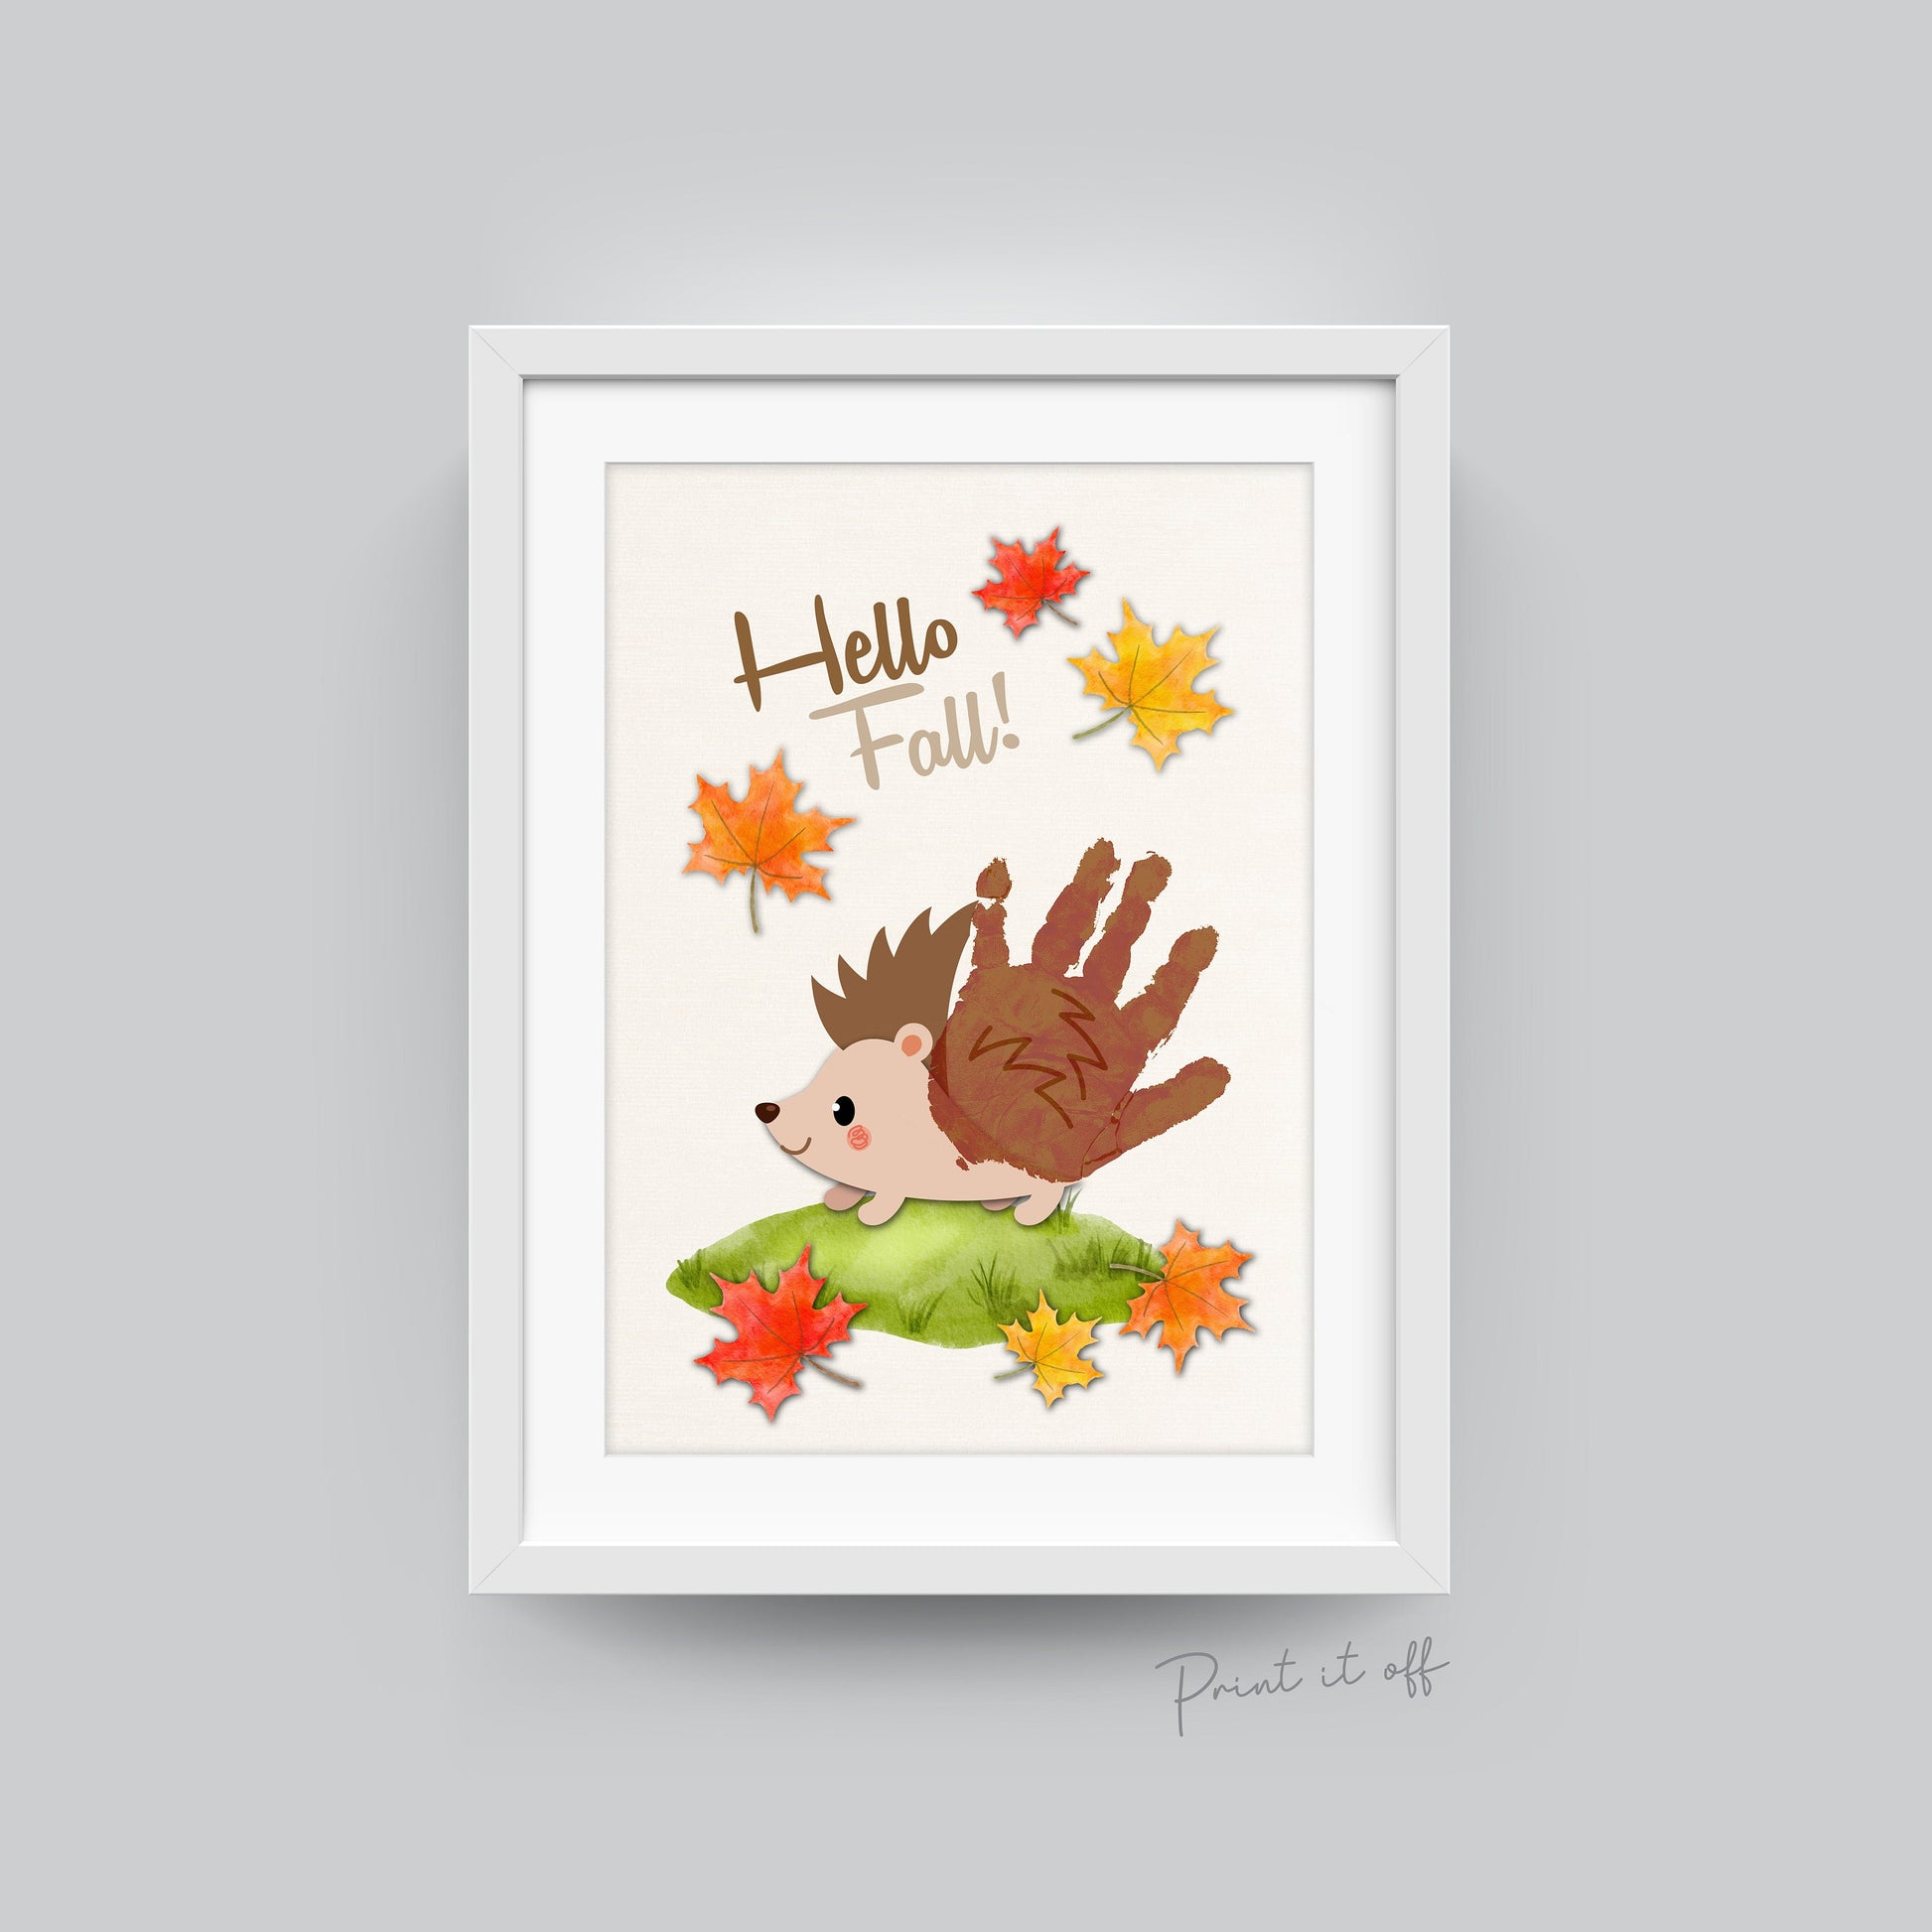 Hello Fall Hedgehog Handprint Hand Art Craft / First Fall Autumn Hedgehog / Kids Toddler Baby Card Memory Keepsake DIY / Print It Off  0563